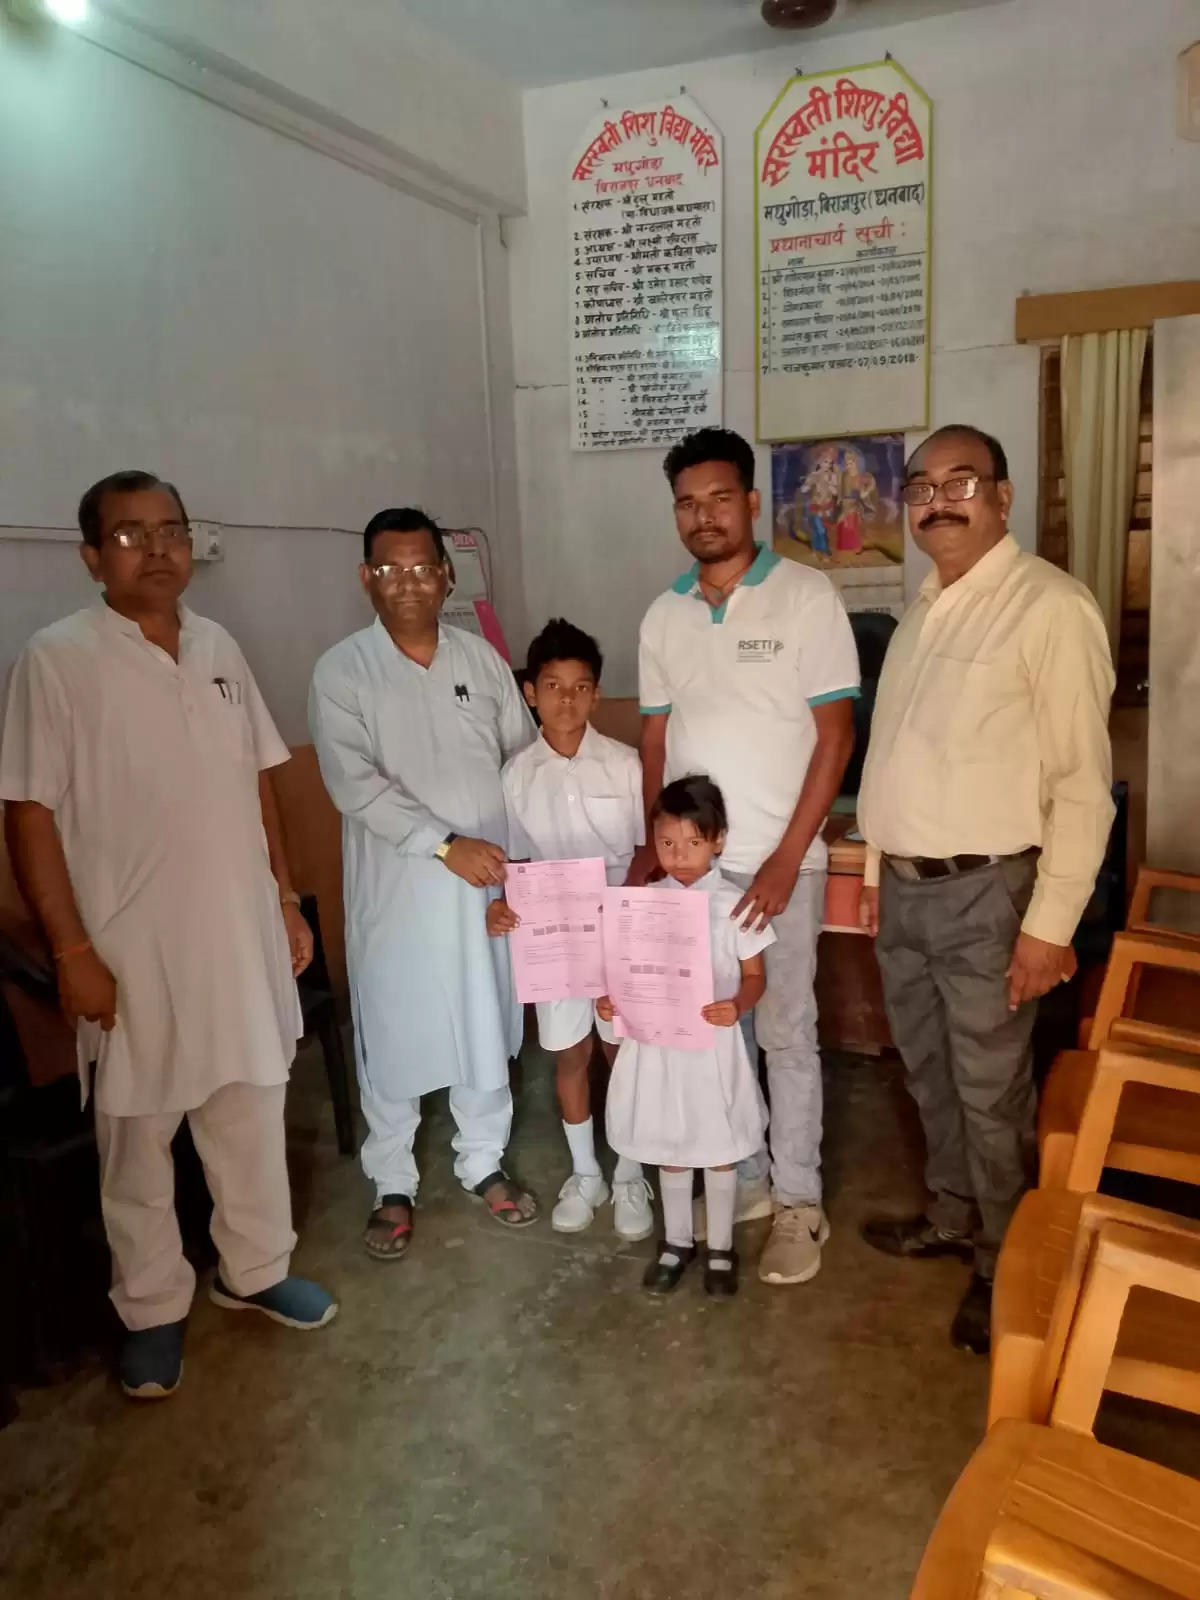 धनबाद जिले अंतर्गत गोविंदपुर प्रखंड बरवाअड्डा क्षेत्र के सुदूरवर्ती ग्रामीण क्षेत्र बिराजपुर पंचायत मधुगोड़ा में विद्या विकास समिति झारखंड द्वारा संचालित सरस्वती शिशु विद्या मंदिर में वार्षिक परीक्षा 2023- 24 का परीक्षाफल परिणाम घोषित किया गया। इसमें विद्यालय के पूर्व छात्र रह चुके रंजीत कुमार महतो की बेटी ऐंज़ल कुमारी और ऋतिक कुमार महतो को बेहतर प्रदर्शन अंक लाने के लिए सरस्वती शिशु विद्या मंदिर विद्यालय परिवार के तरफ़ से सम्मानित करके हौंसला अफजाई किया गया। विद्यालय के सभी छात्र छात्राओं को उनके उज्जवल भविष्य की शुभकामनाएं दी गयी। ज्ञातव हो कि धनबाद जिले बरवाअड्डा क्षेत्र के सुदूरवर्ती गांव क्षेत्र होते हुए भी विद्यालय प्रबंधन अपने सीमित संसाधनों के बावजूद भी सरस्वती शिशु विद्या मंदिर, मधुगोड़ा बिराजपुर के छात्र छात्राएं पुरे धनबाद में बेहतरीन प्रदर्शन के लिए प्रसिद्ध है। विद्या मंदिर के पूर्व छात्र रह चुके रंजीत कुमार महतो के द्वारा कहा गया कि सरस्वती शिशु विद्या मंदिर मधुगोड़ा बिराजपुर के पूर्व छात्र छात्राएं रेलवे लोको पायलट, बिजली विभाग में मुख्य अभियंता, झारखंड सरकार के कार्मिक विभाग, पत्रकारिता आदि कई सरकारी और गैर-सरकारी विभागों में कार्यरत हैं और अपने बरवाअड्डा क्षेत्र के साथ साथ संपूर्ण धनबाद जिले का नाम रौशन कर रहें हैं। मौके पर उपस्थित विद्यालय के प्रधानाचार्य, राजकुमार, आचार्य रविन्द्र कुमार मिश्रा, पूर्व छात्र रंजीत कुमार महतो के द्वारा सभी छात्र छात्राओं को उनके उज्जवल भविष्य की शुभकामनाएं दी गयी।  